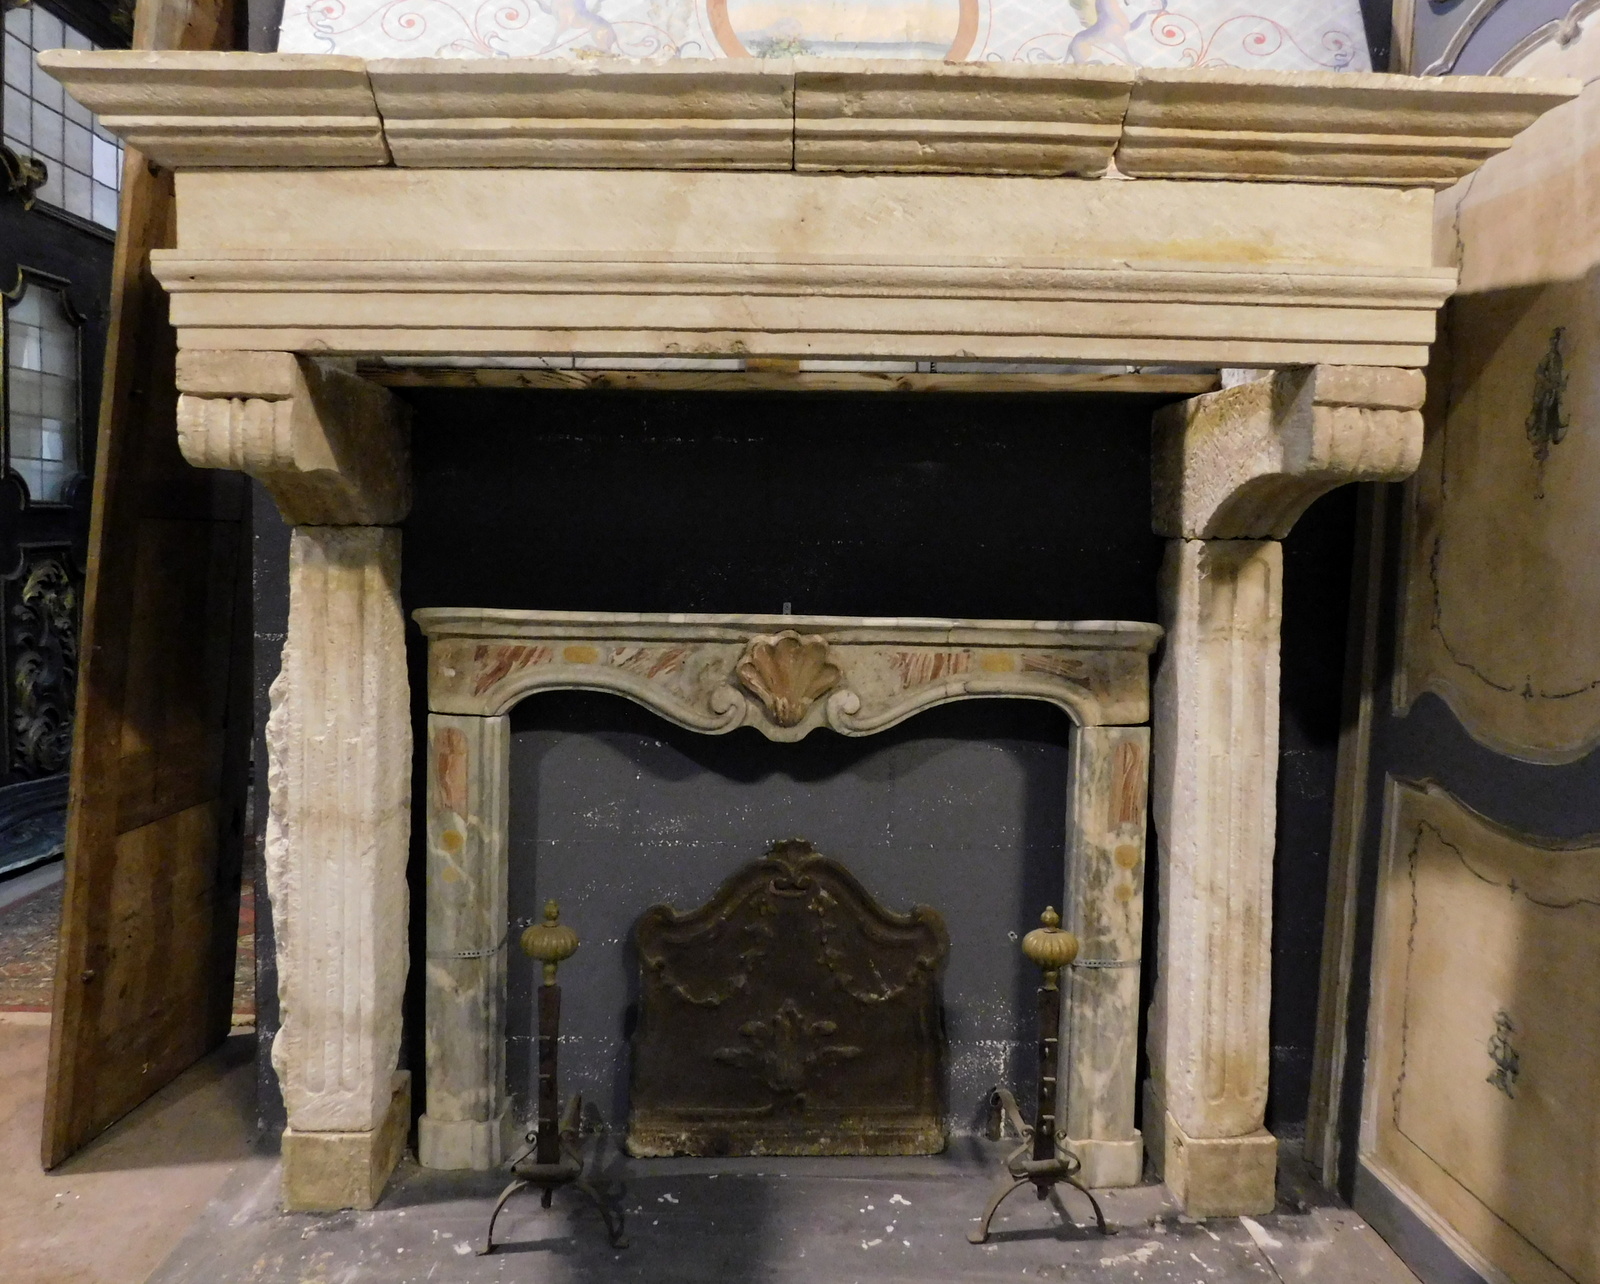 chp332 - stone fireplace, '500 /' 600 period, cm w 200 x h 184 x p. 77